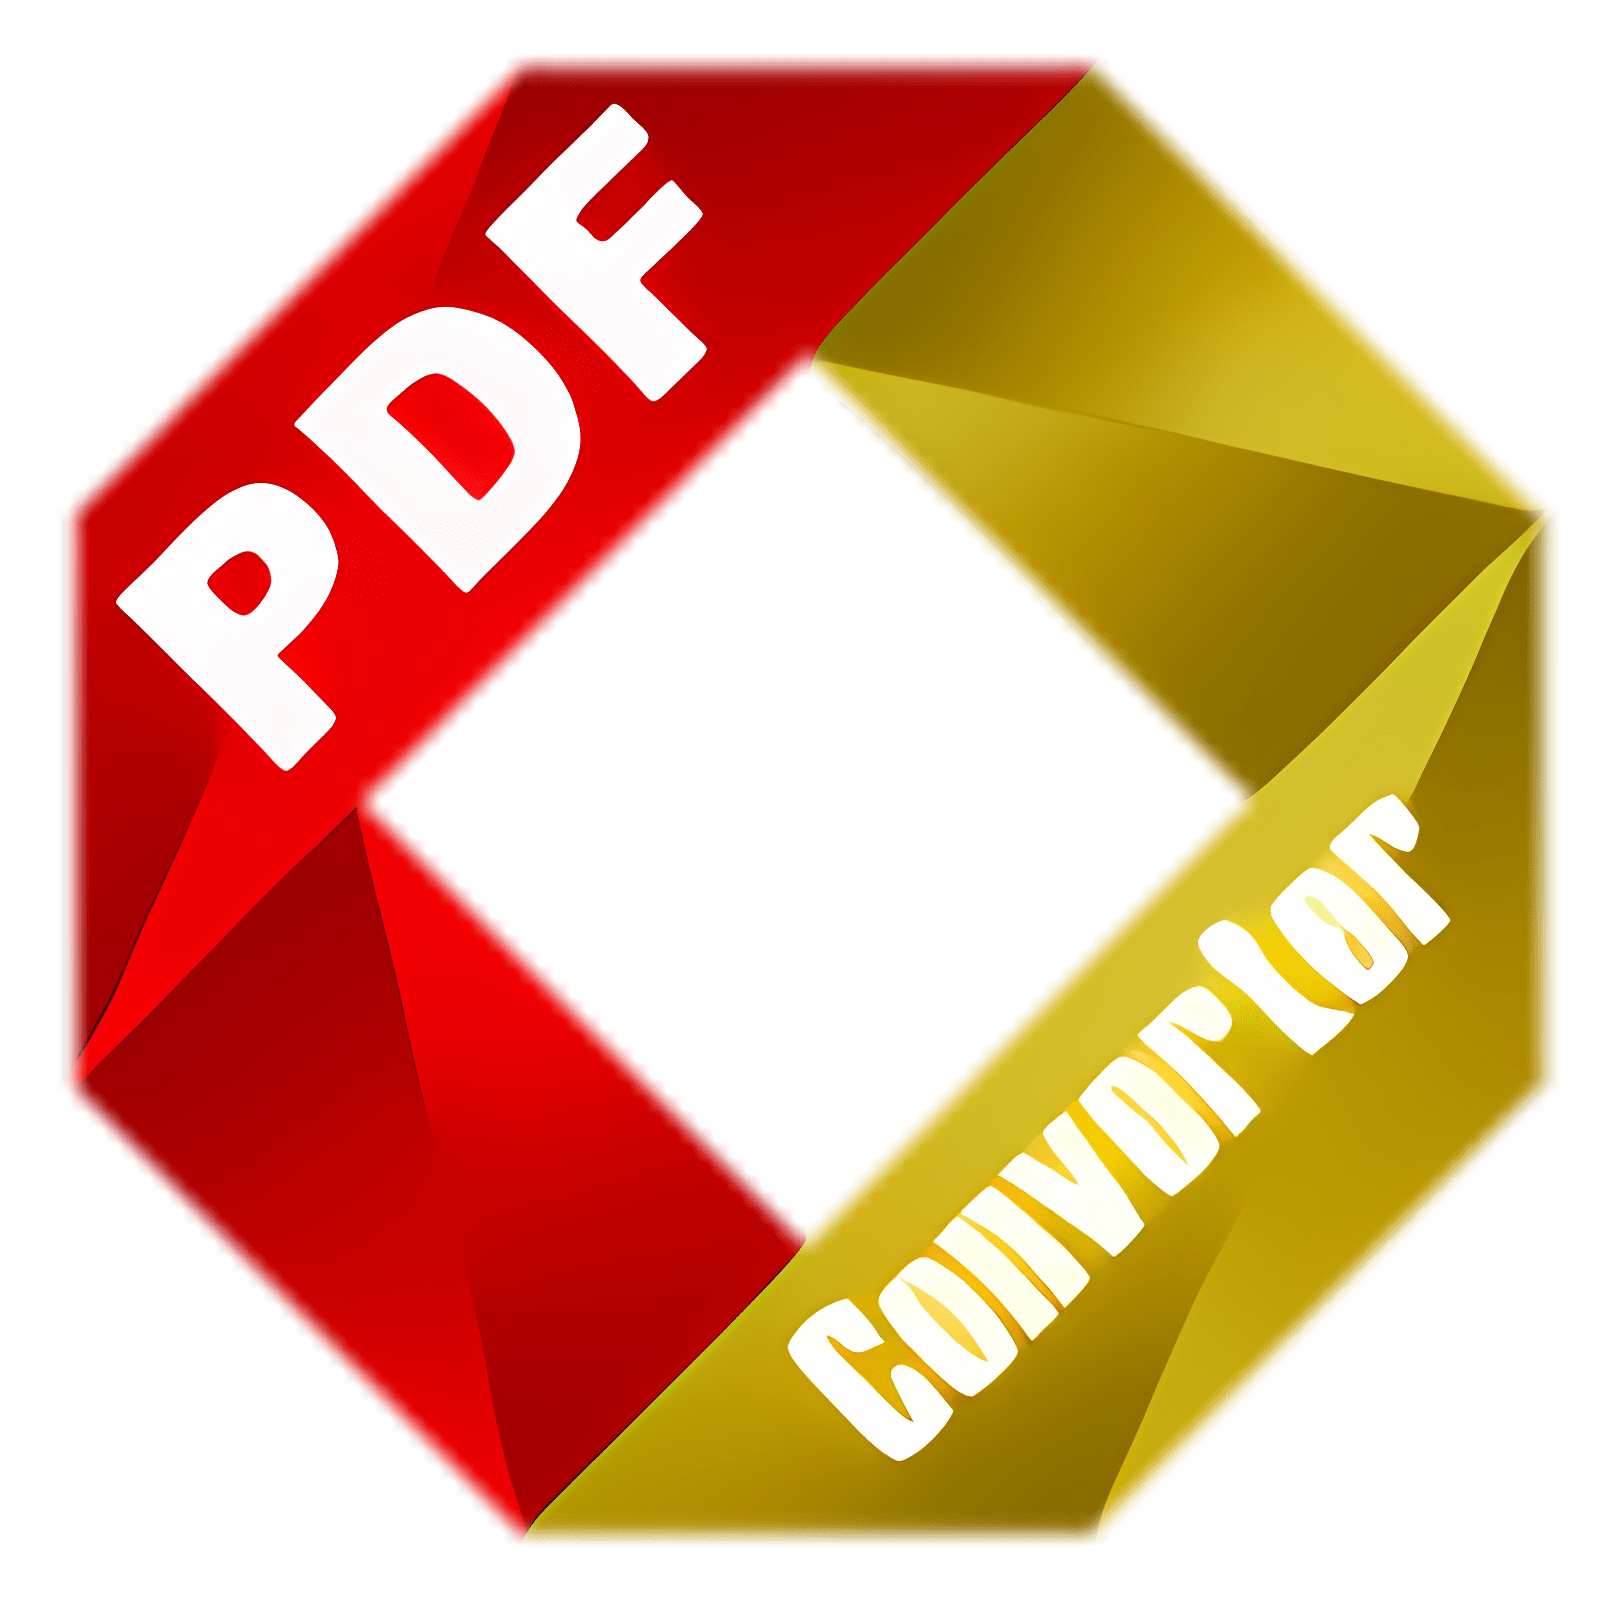 下载 PDF Converter for Mac 安装 最新 App 下载程序